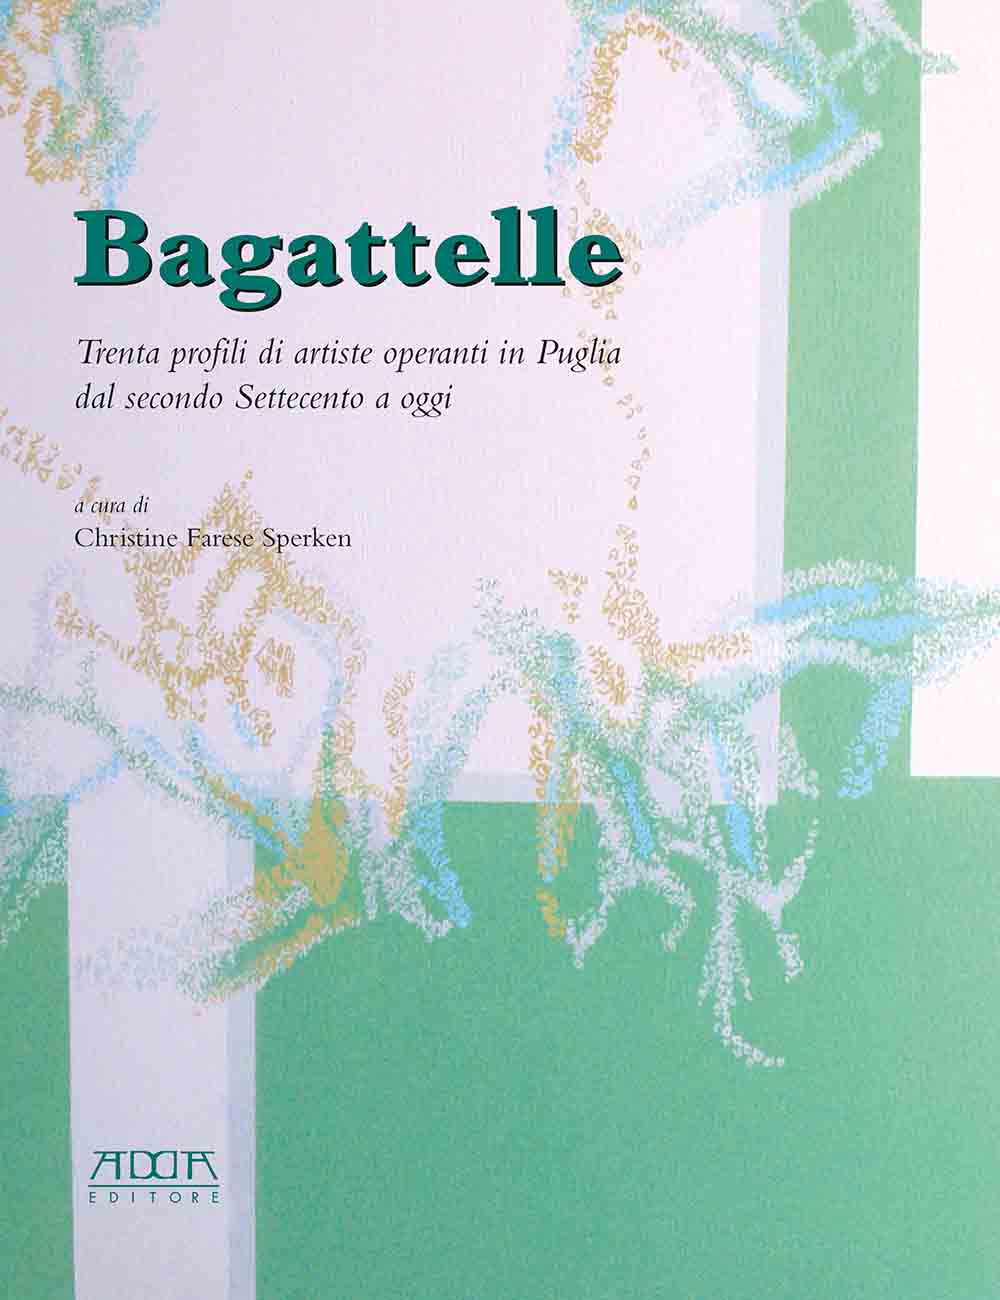 Presentazione del volume "Bagattelle"